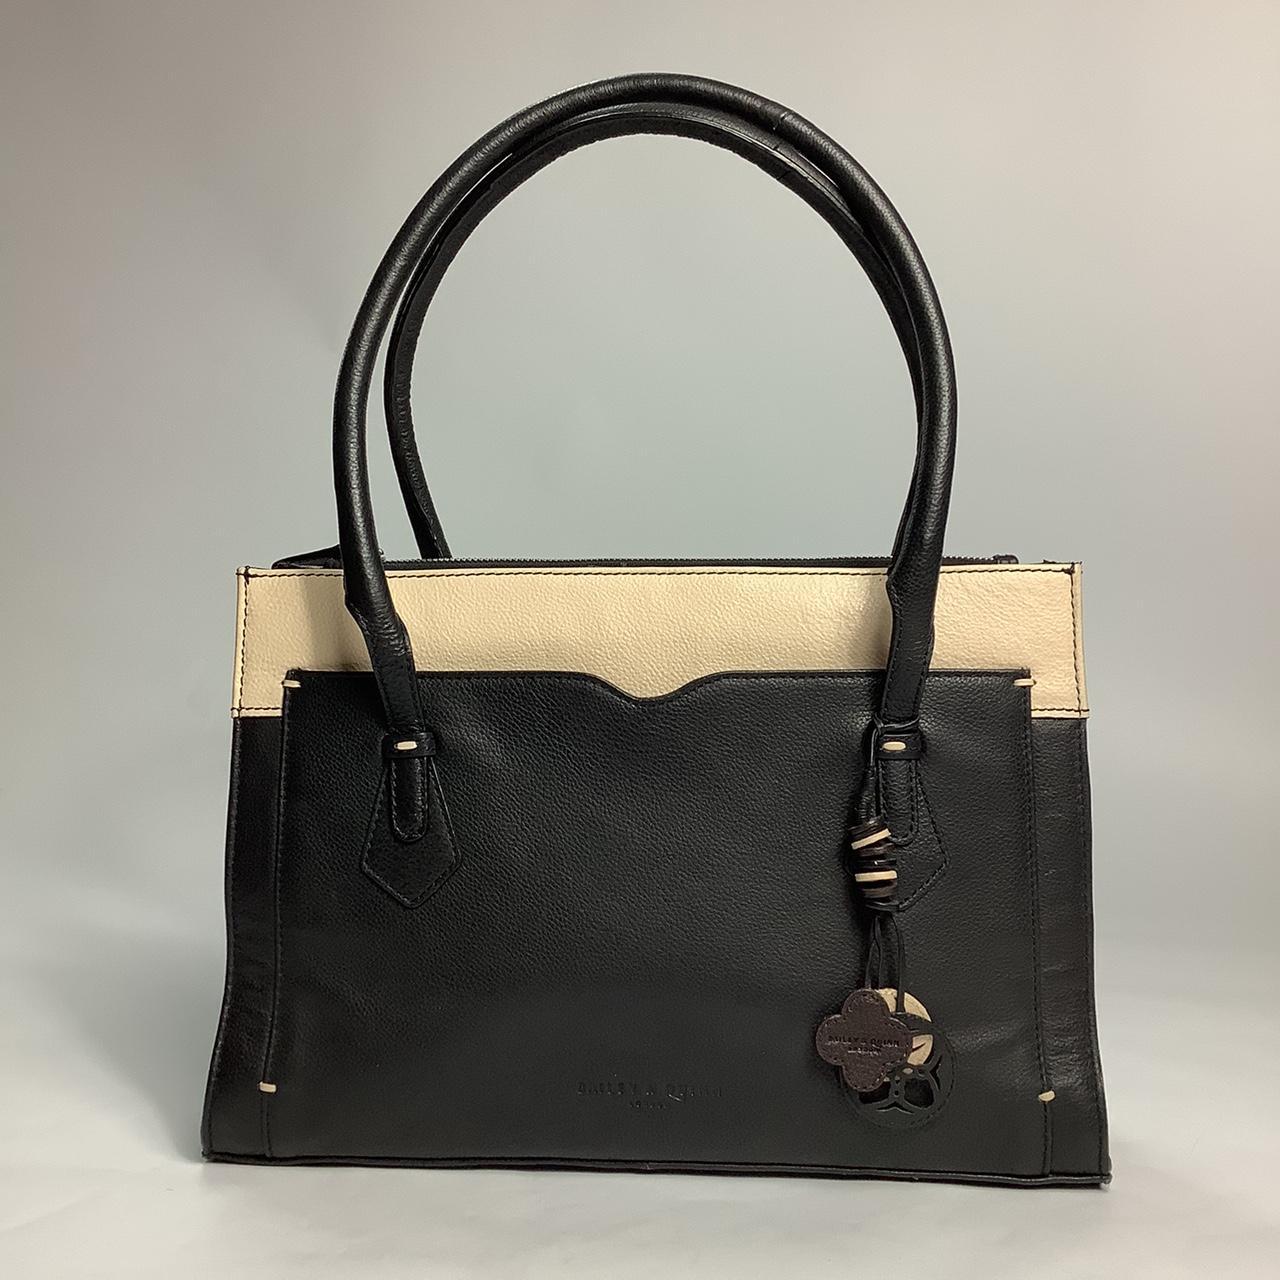 Vintage Black Patent Handbag From Designer at Debenhams - Etsy